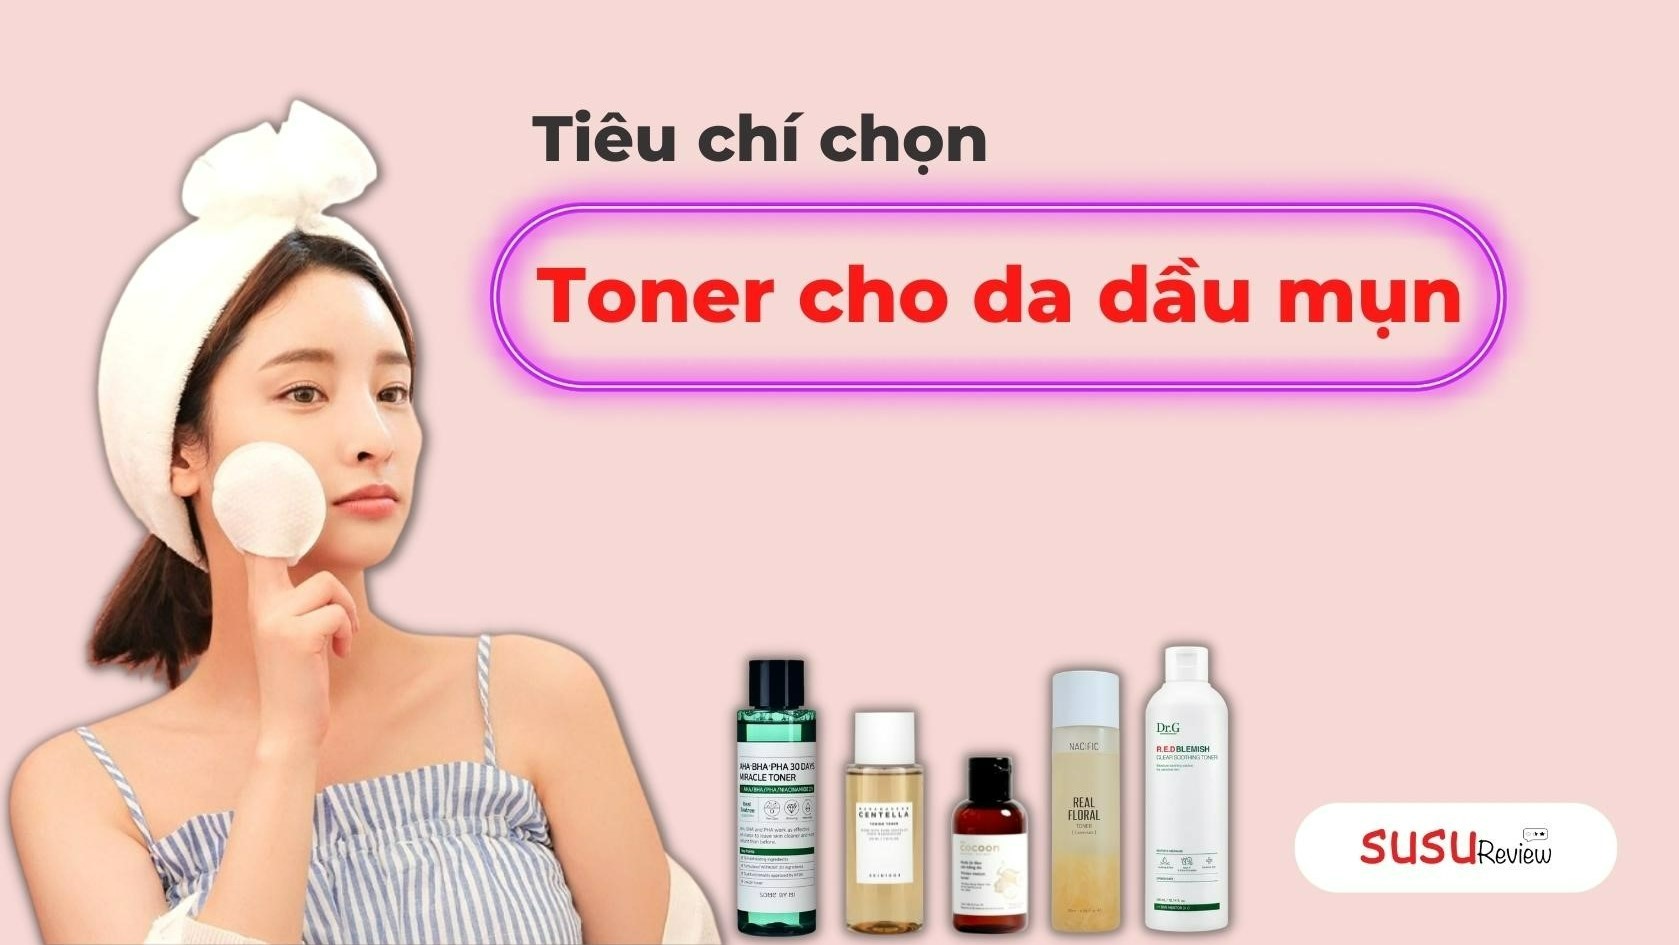 tieu-chi-chon-toner-cho-da-dau-mun.jpg